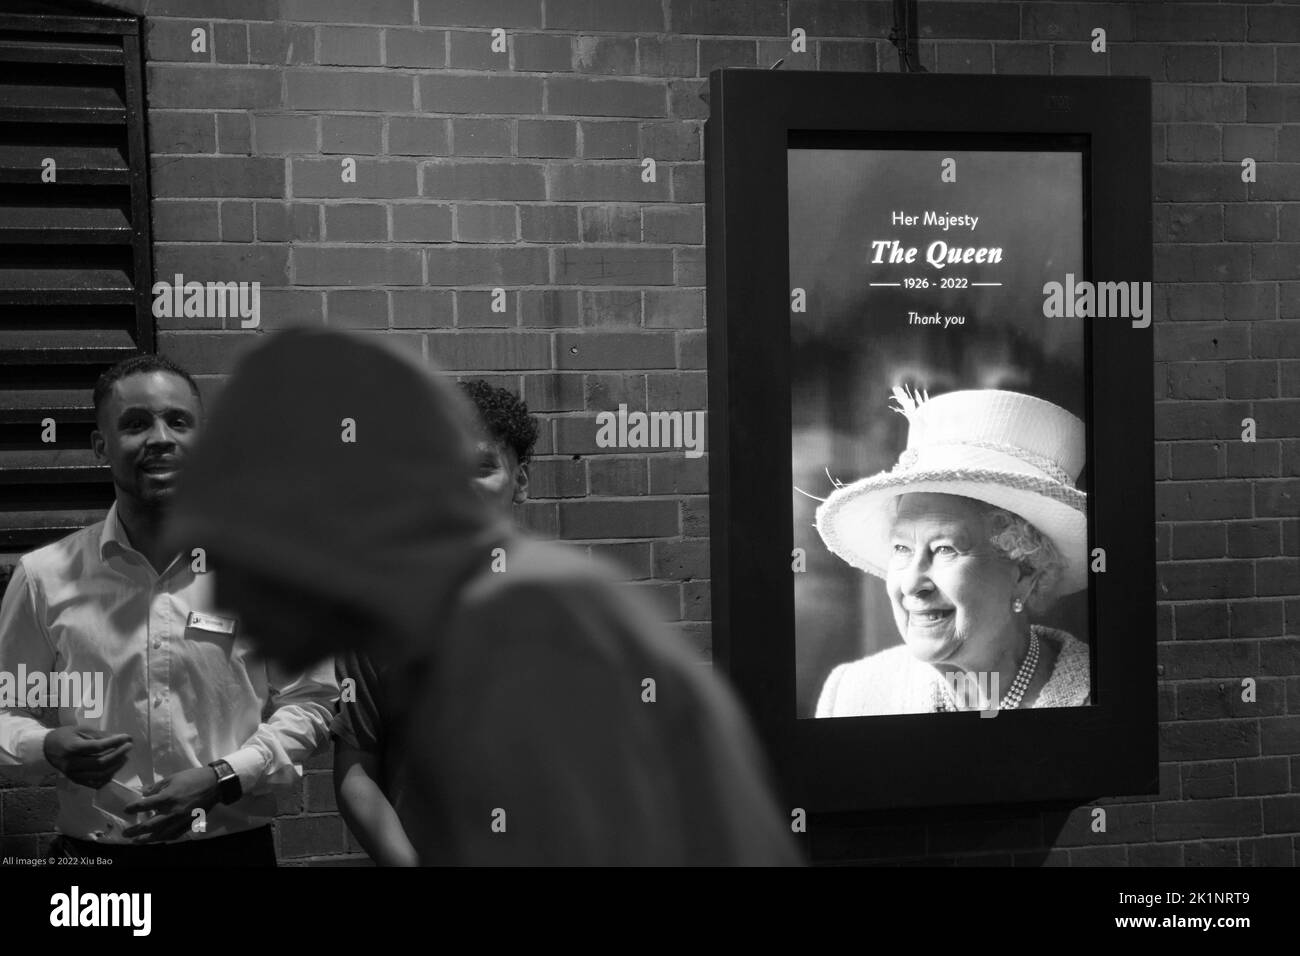 Londres, Reino Unido, 19th de septiembre de 2022. El retrato de la reina se muestra en un cartel digital en el extremo oeste central de Londres para rendir homenaje a Su Majestad la Reina y conmemorar su largo servicio a nuestra nación. Crédito: Xiu Bao/Alamy Live News Foto de stock